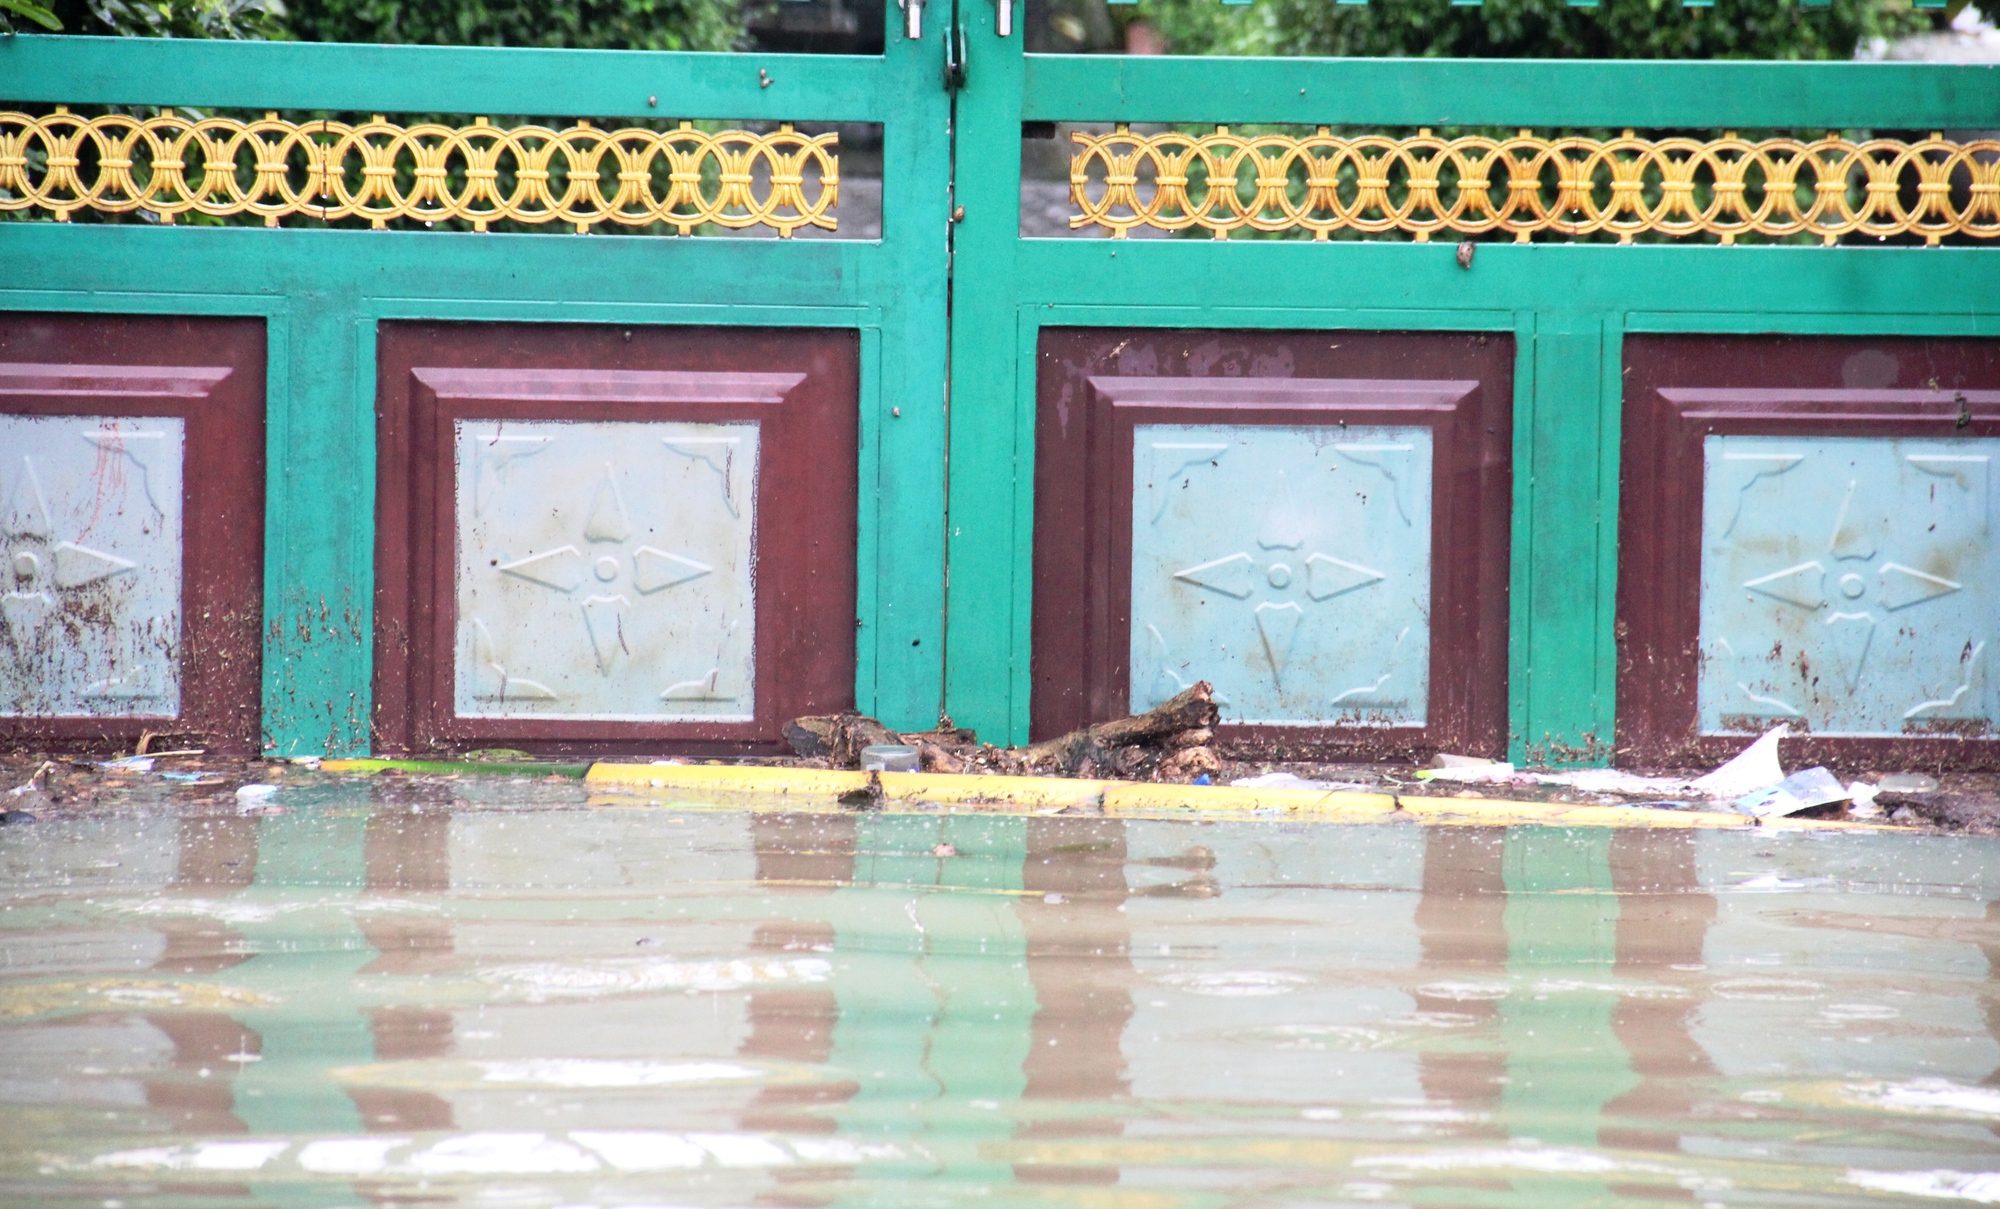 Quảng Nam: Nhiều nơi chìm trong biển nước, dân dùng ghe đi lại - Ảnh 9.